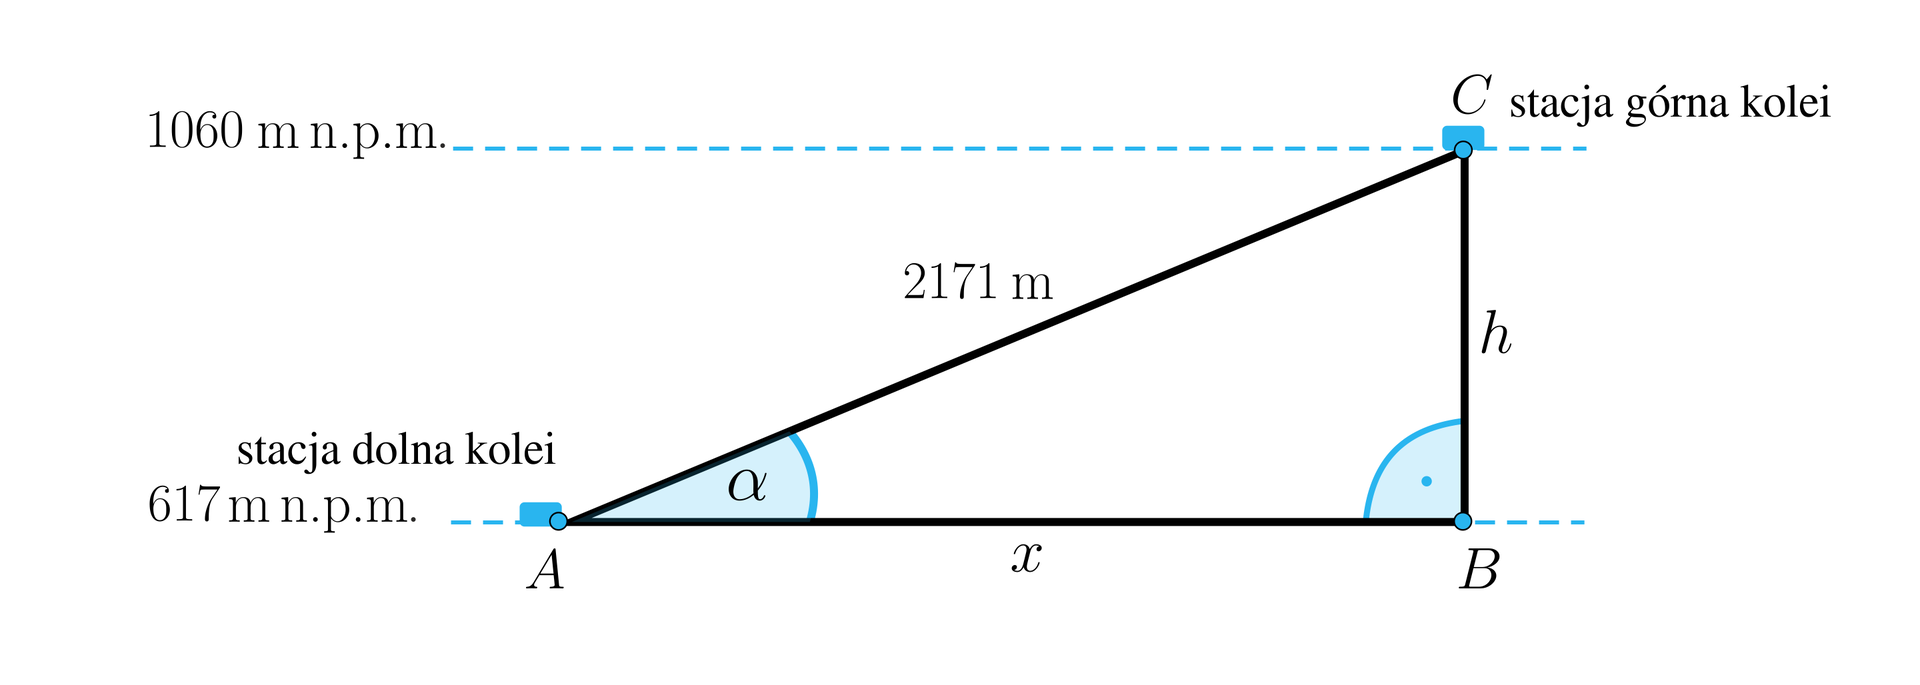 Rysunek przedstawia trójkąt prostokątny ABC, gdzie bok AB jest poziomą podstawą trójkąta oznaczoną jako x. Przy wierzchołku A zaznaczono kąt alfa, przy wierzchołku B znajduje się kąt prosty. Przez podstawę poprowadzono linię przerywaną i opisano przy wierzchołku A następująco: stacja dolna kolei, 617 m n. p. m. Bok trójkąta CB jest pionową przyprostokątną i opisany jest jako h. Na ilustracji poprowadzono drugą poziomą przerywaną linię przechodzącą przez wierzchołek C. Linia ta symbolizuje poziom 1060 m n. p. m. Przy wierzchołki C dodano następujący opis: stacja górna kolei. Przekątna trójkąta opisana jest następująco: 2171 m.